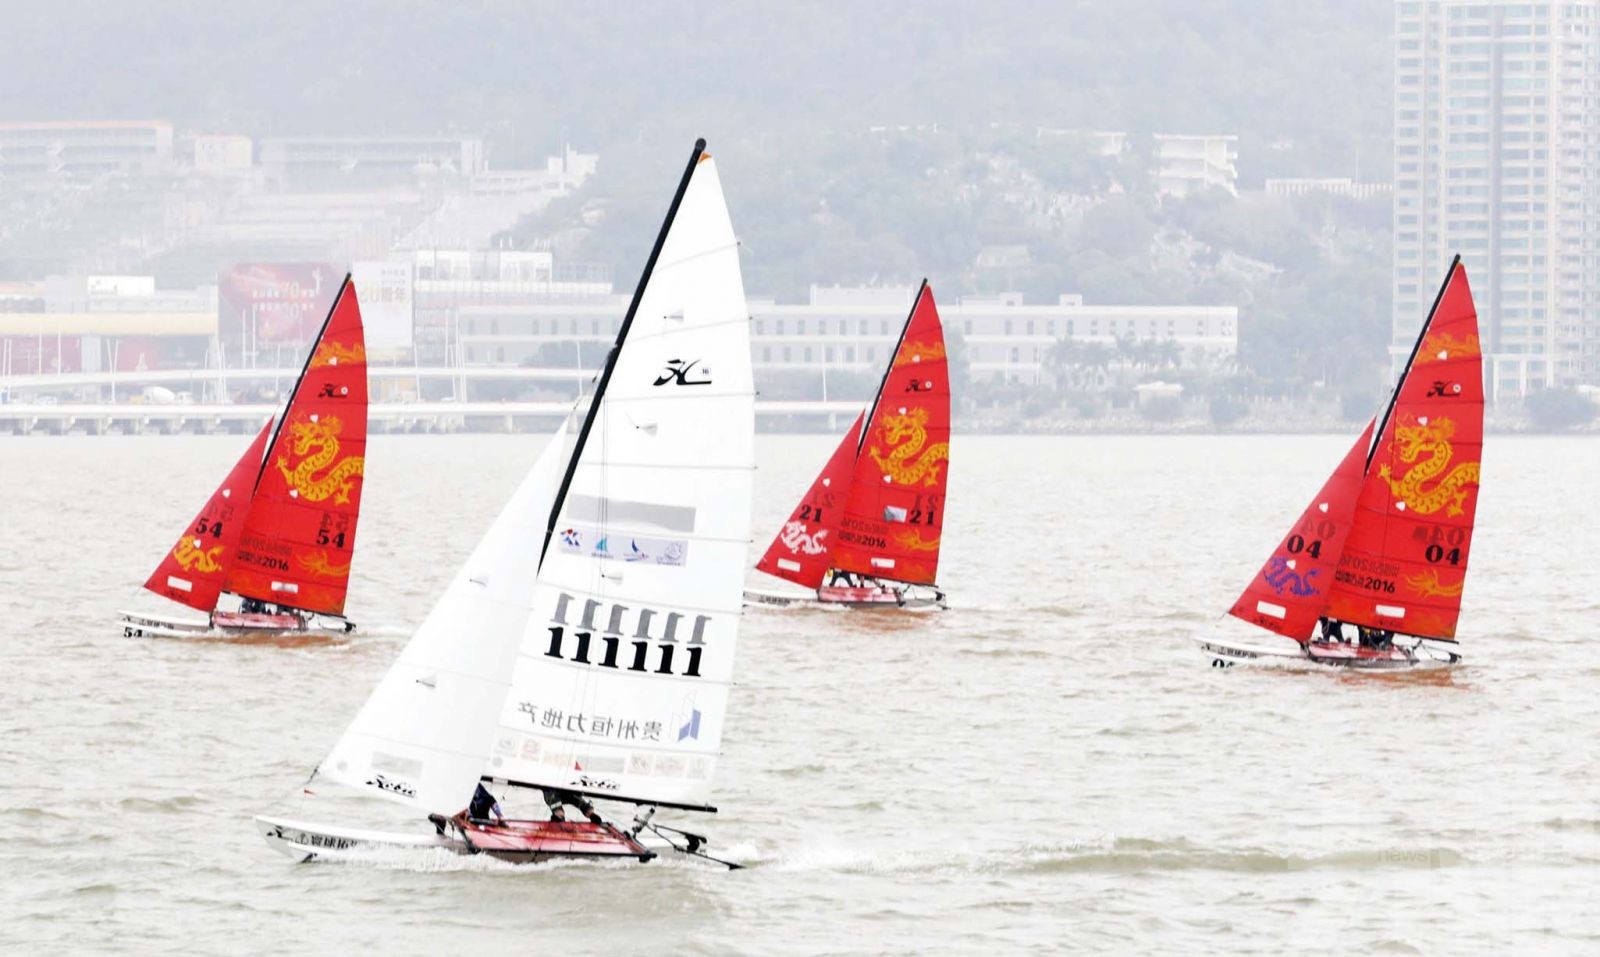 Team Pean澳門盃國際帆船賽暫佔首位